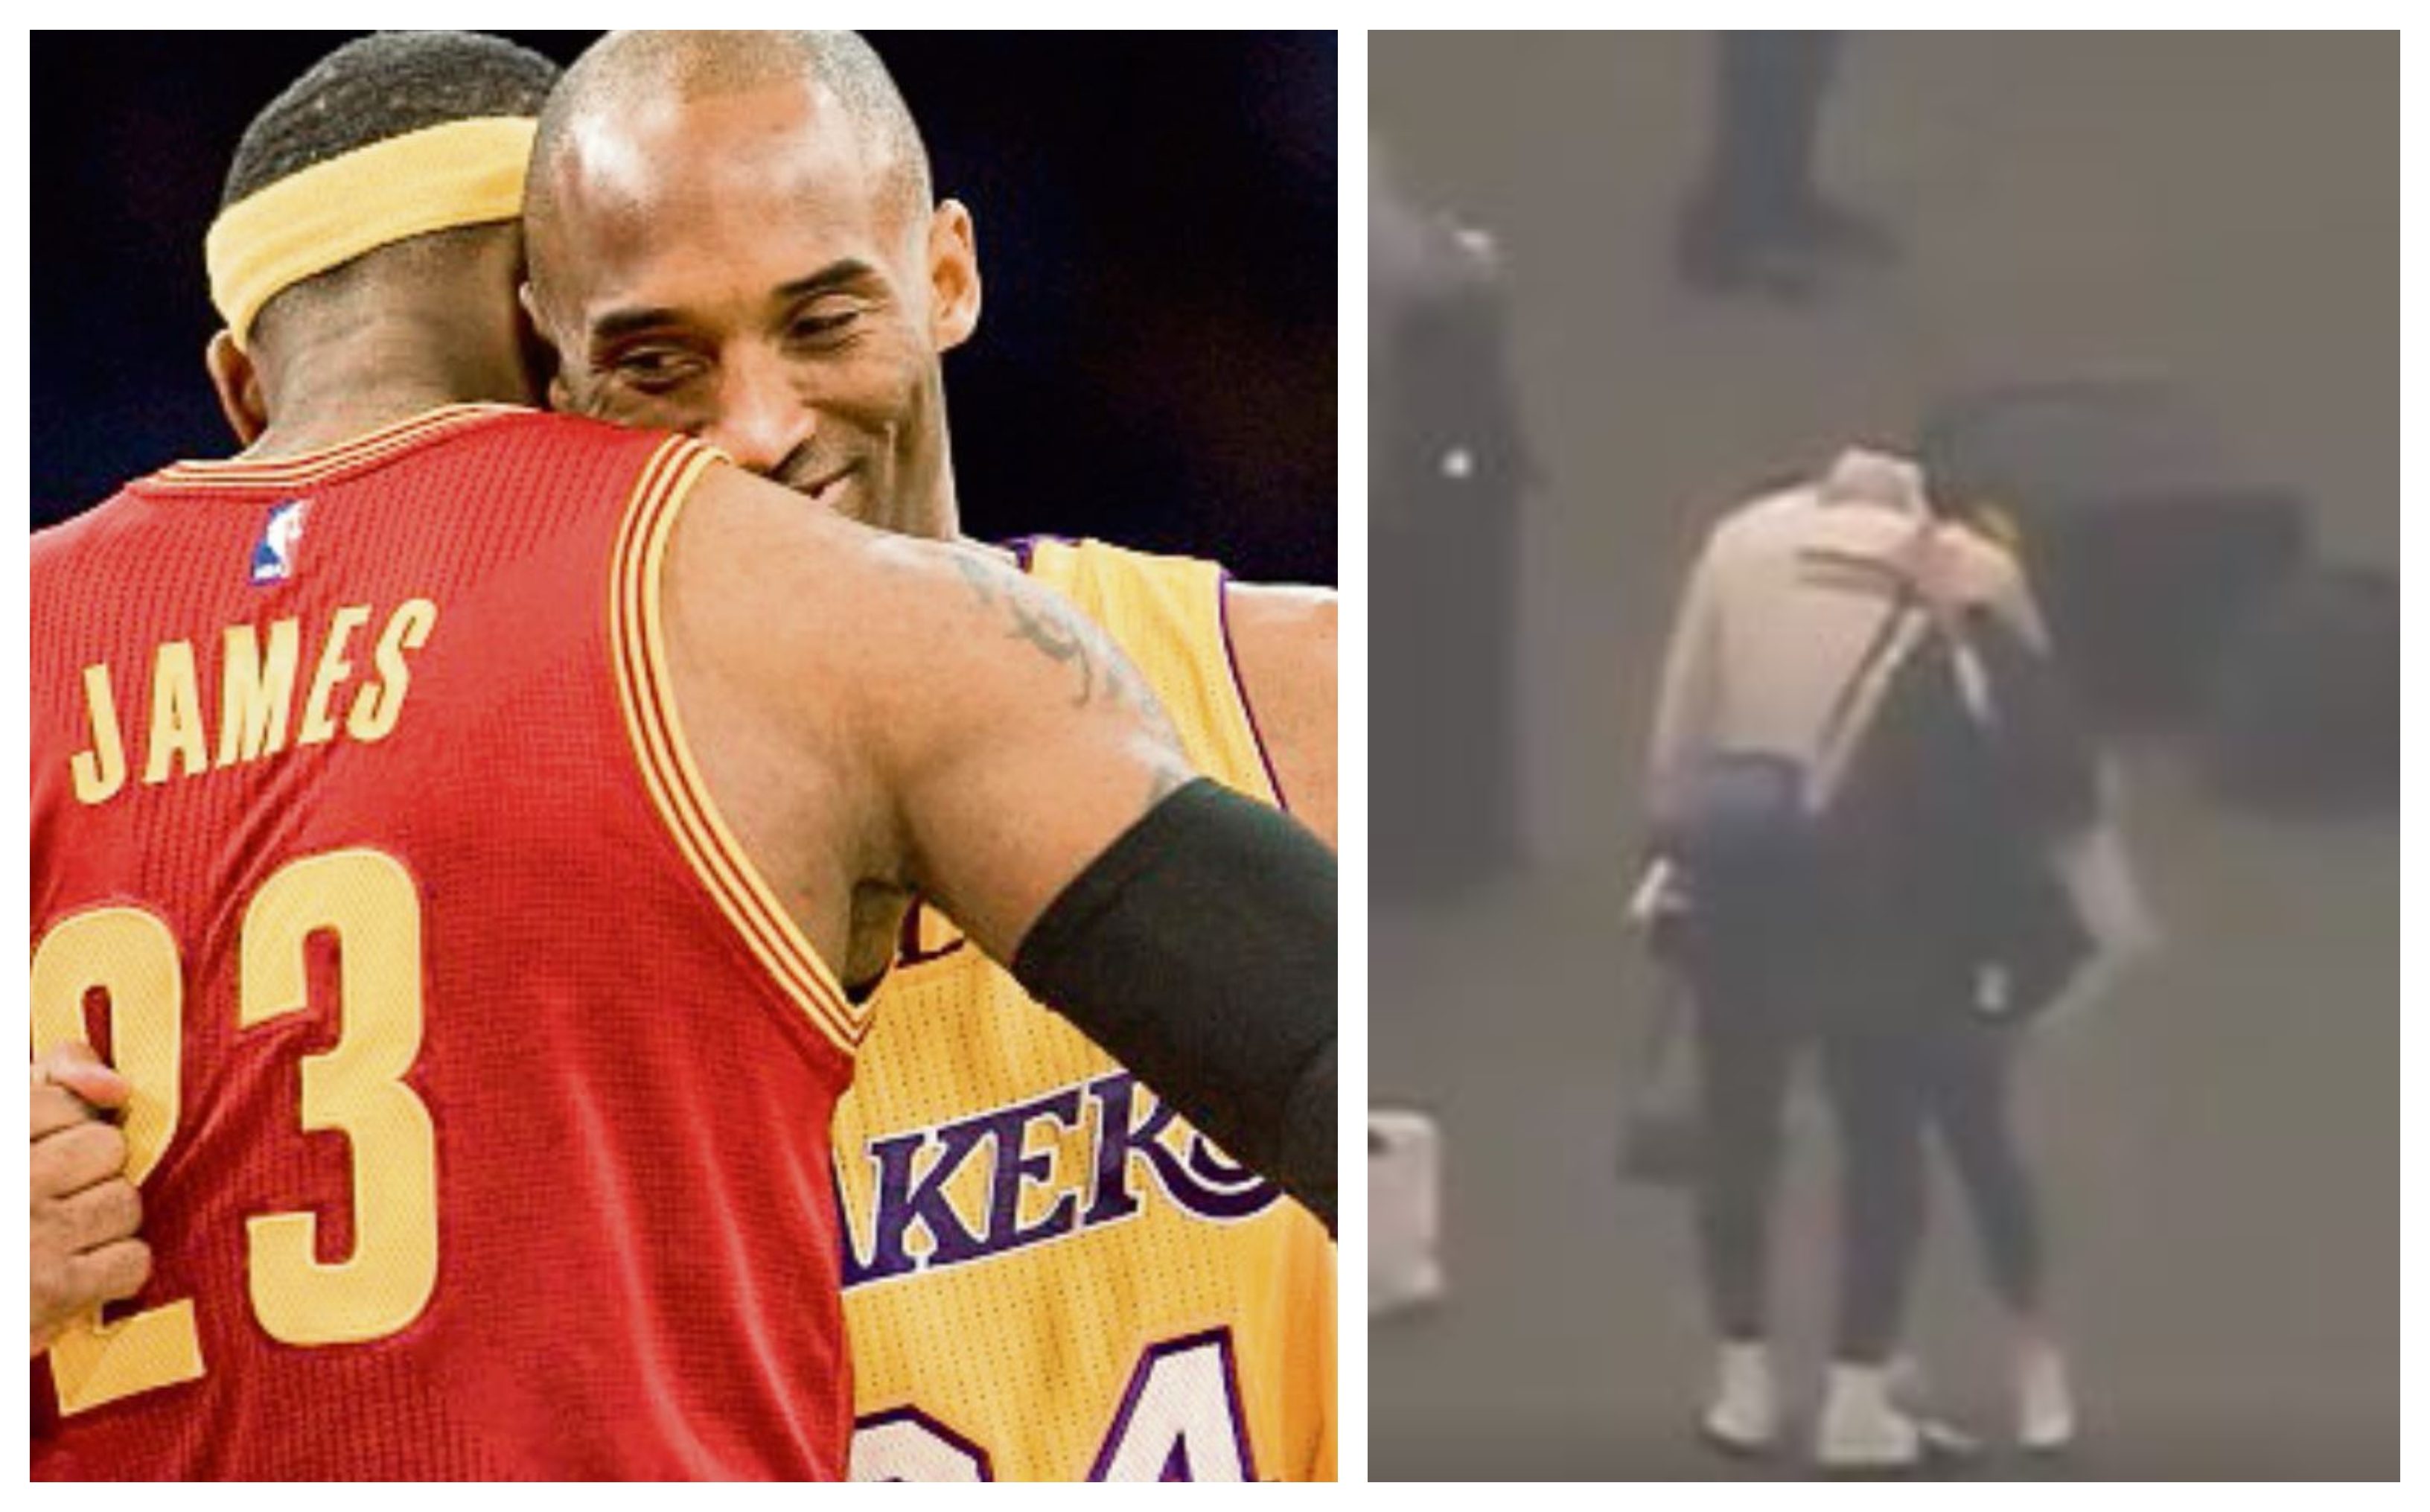 LeBron James tenía una fuerte amistad con Kobe Bryant. (Foto Prensa Libre: Hemeroteca PL y Twitter)